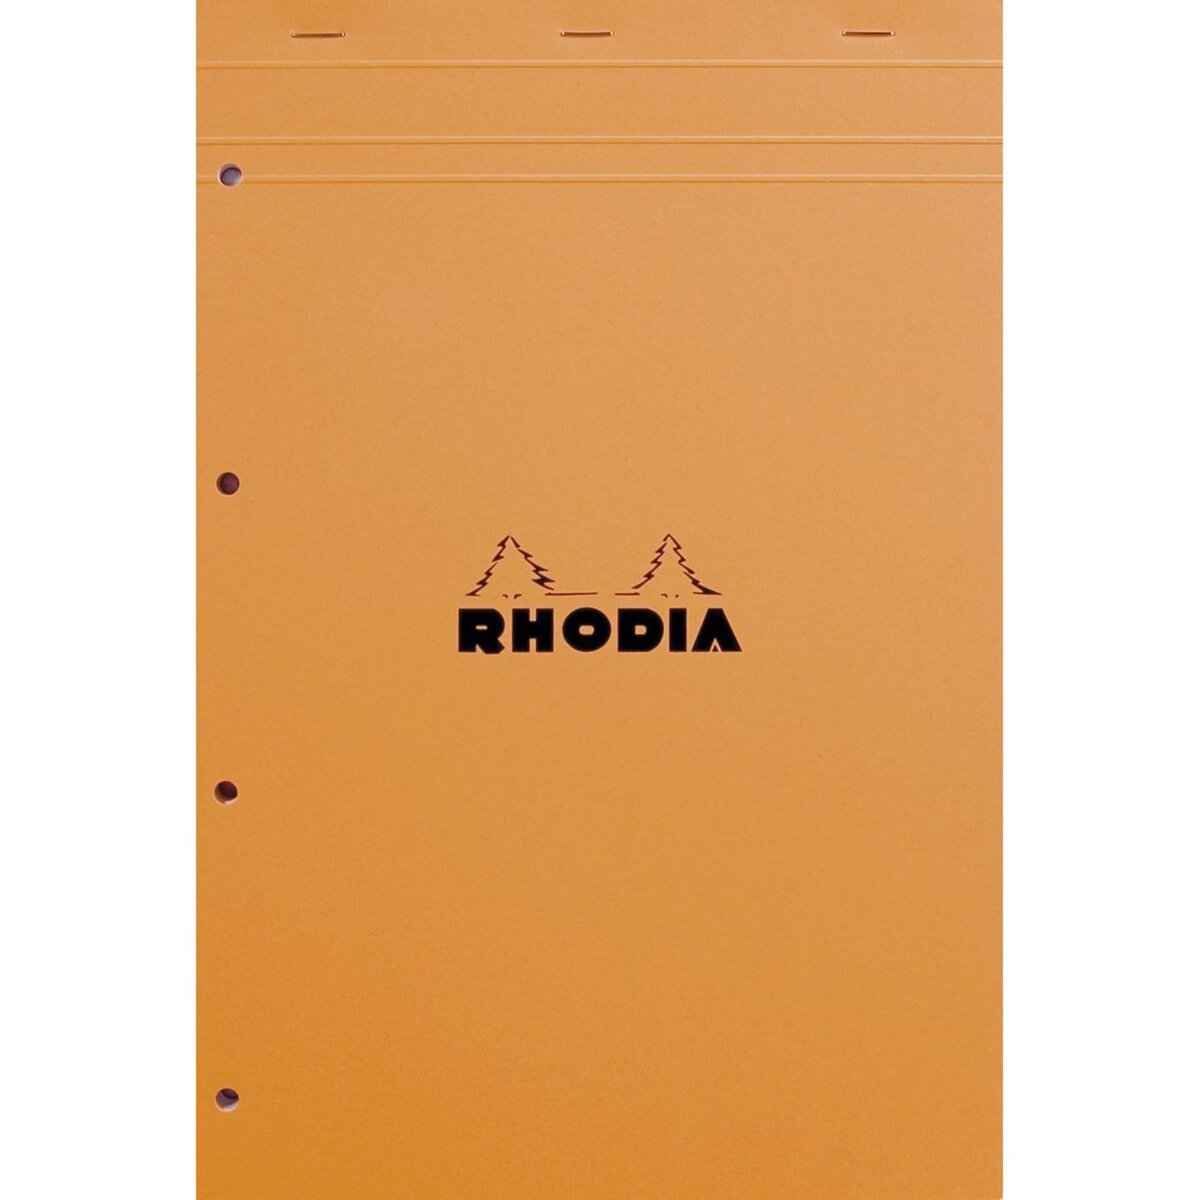 RHODIA Bloc note perforé 4 trous 21x31,8cm 160 pages petits carreaux 5x5 orange